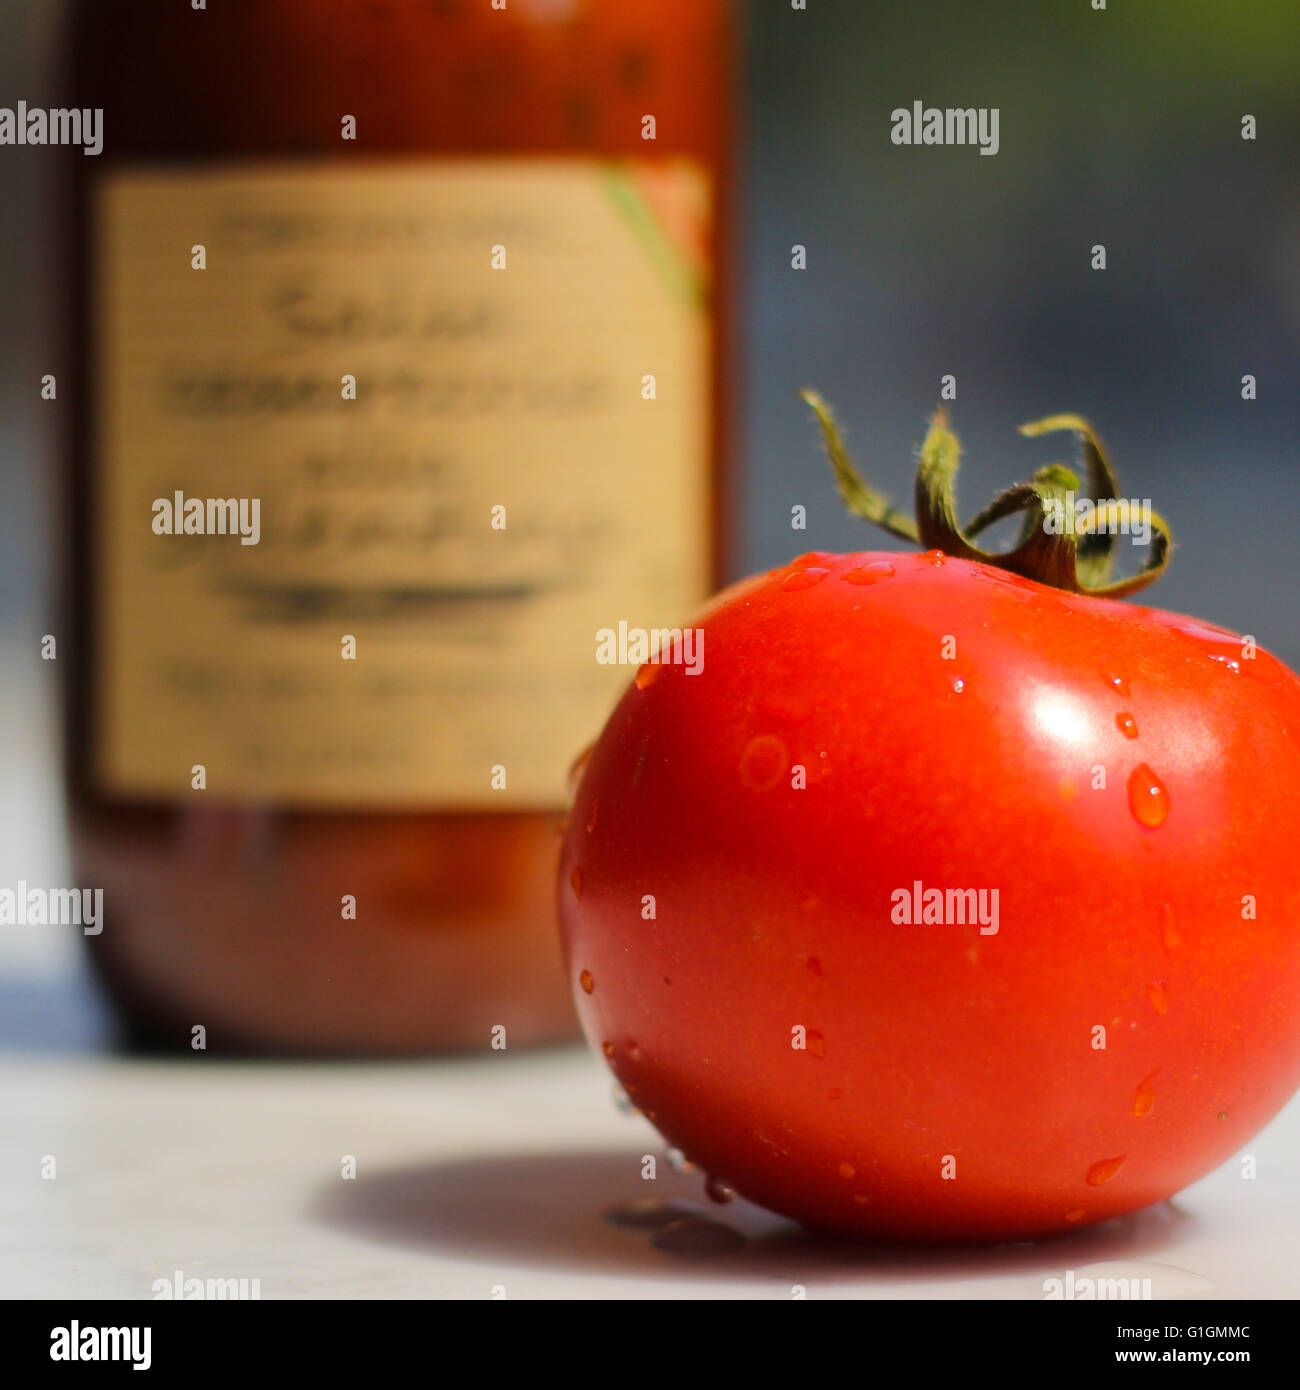 Whole tomato Stock Photo